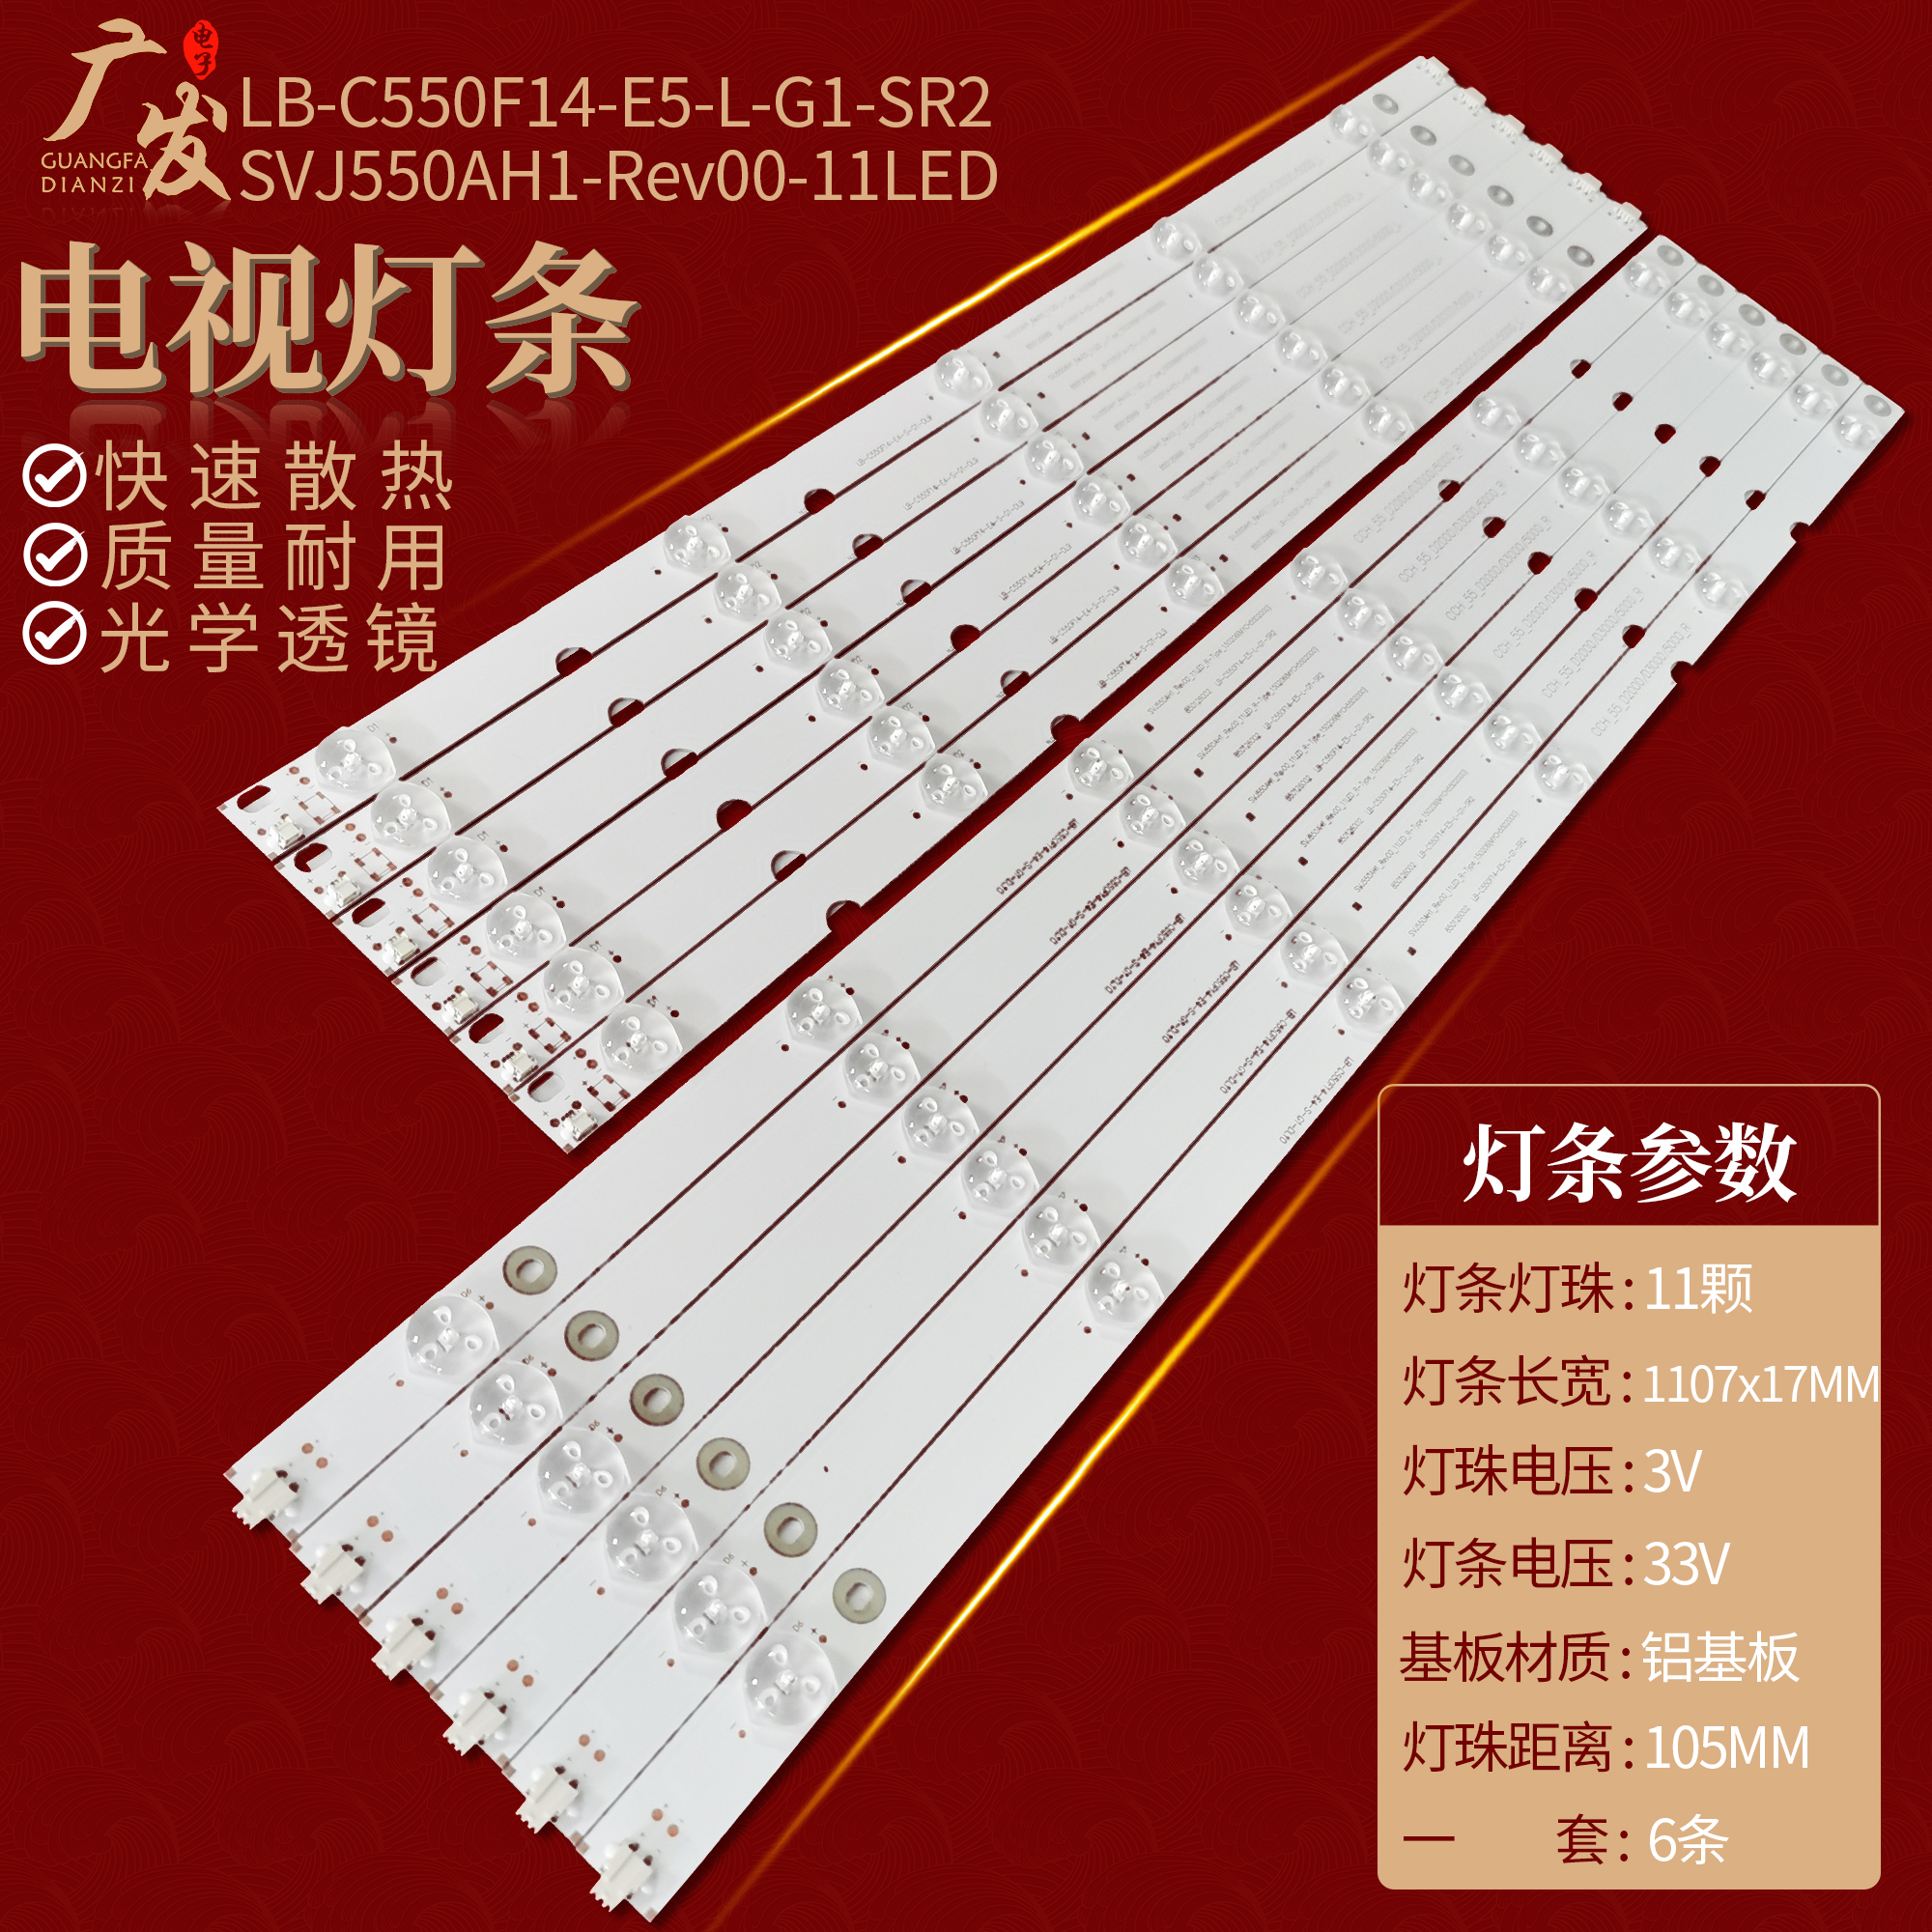 Changhong 55d2000i Lights LED55C2080i LED55C2000I Backlight Strip UD55D7200I